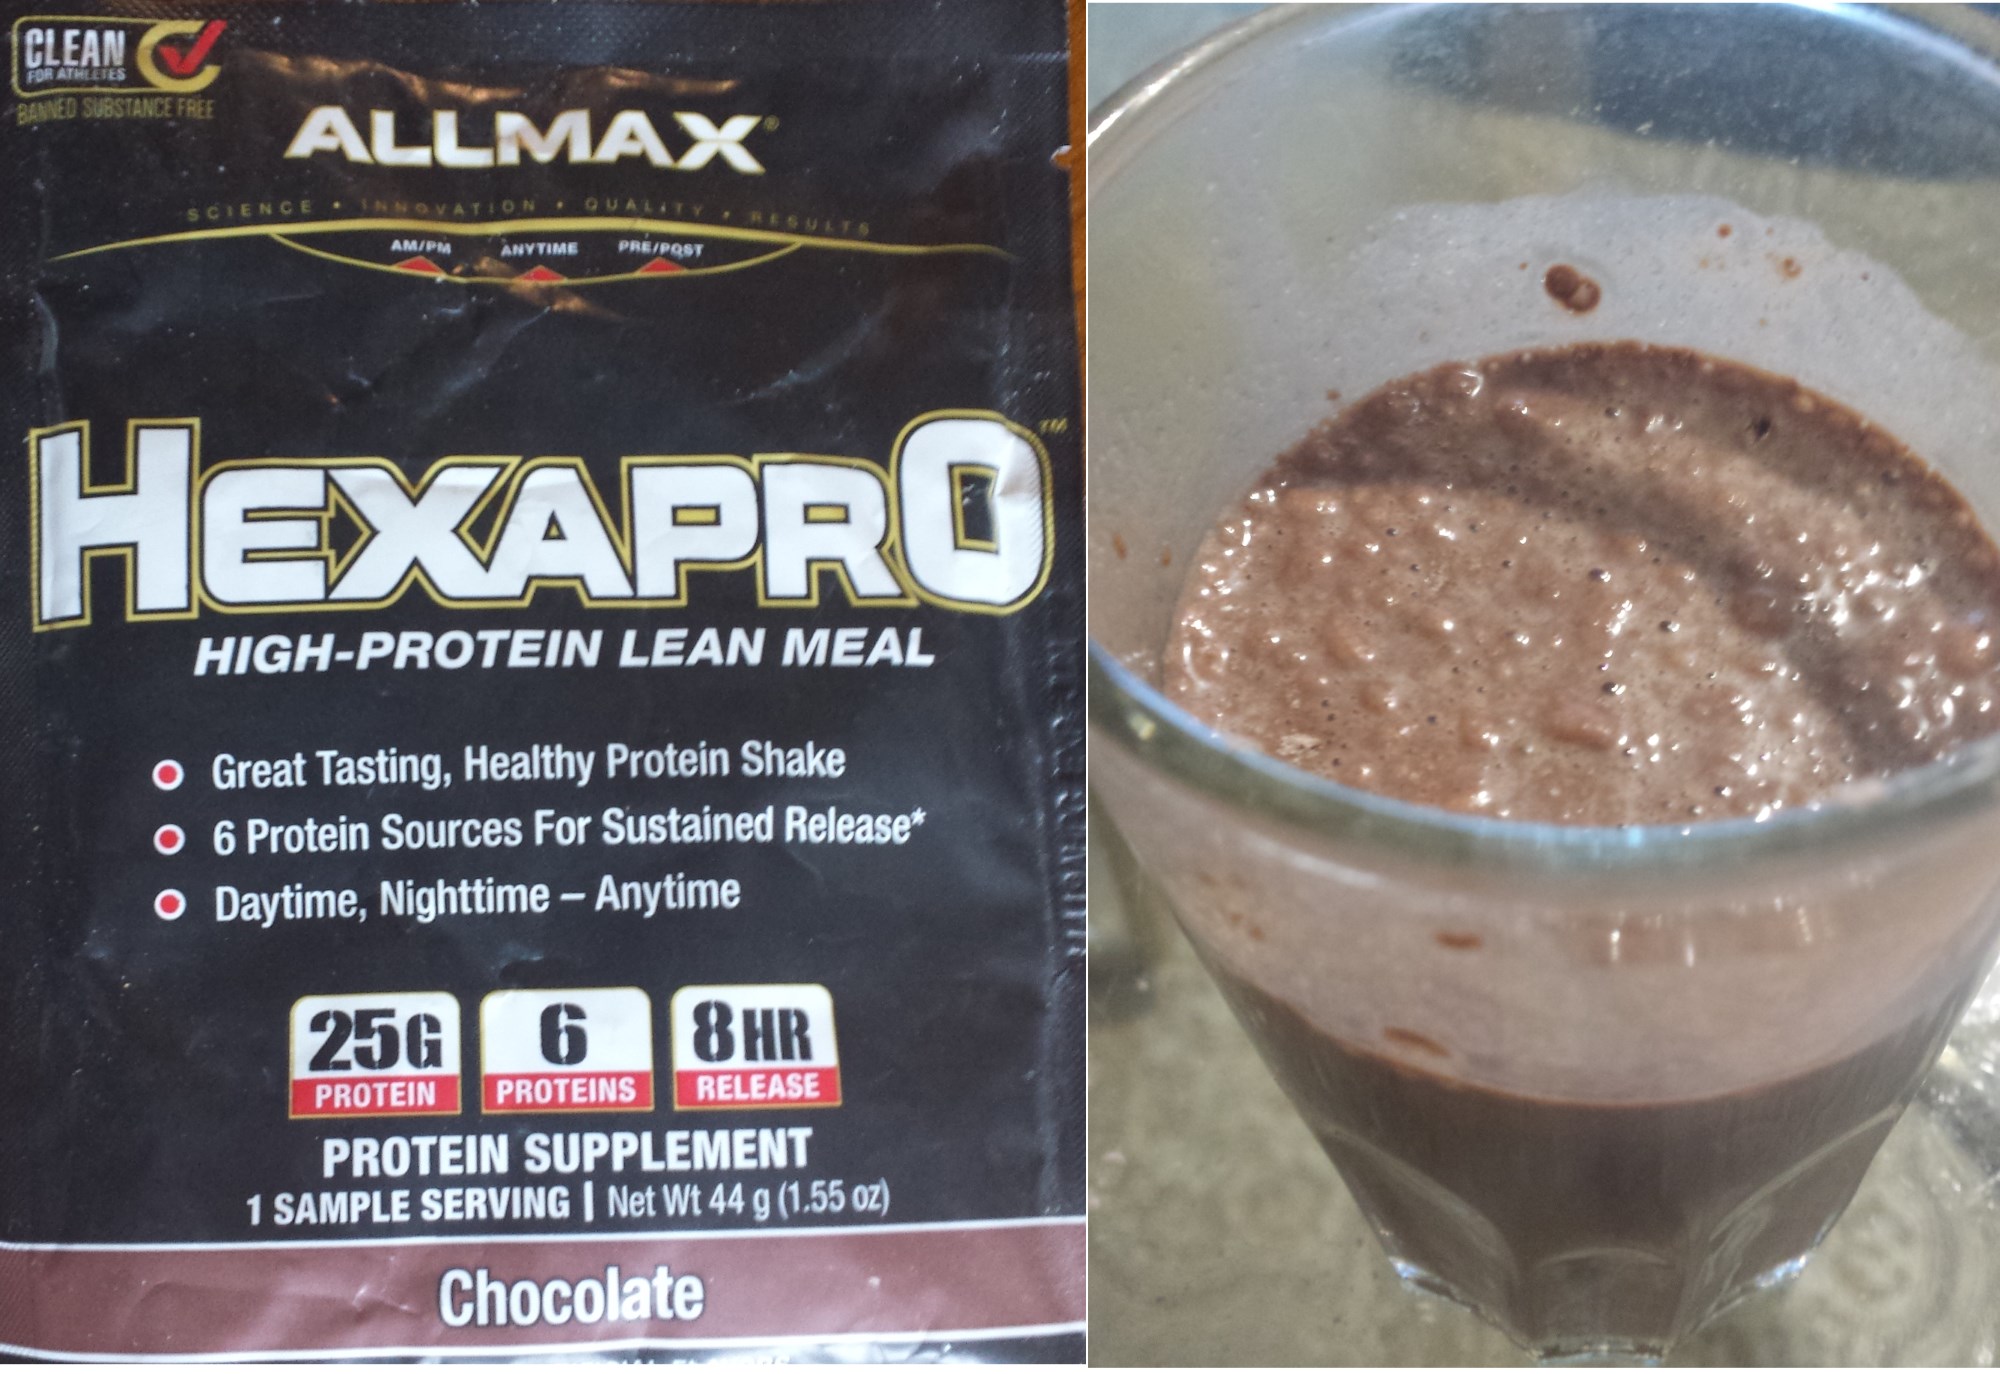 ALLMAX Hexapro protein powder supplement 